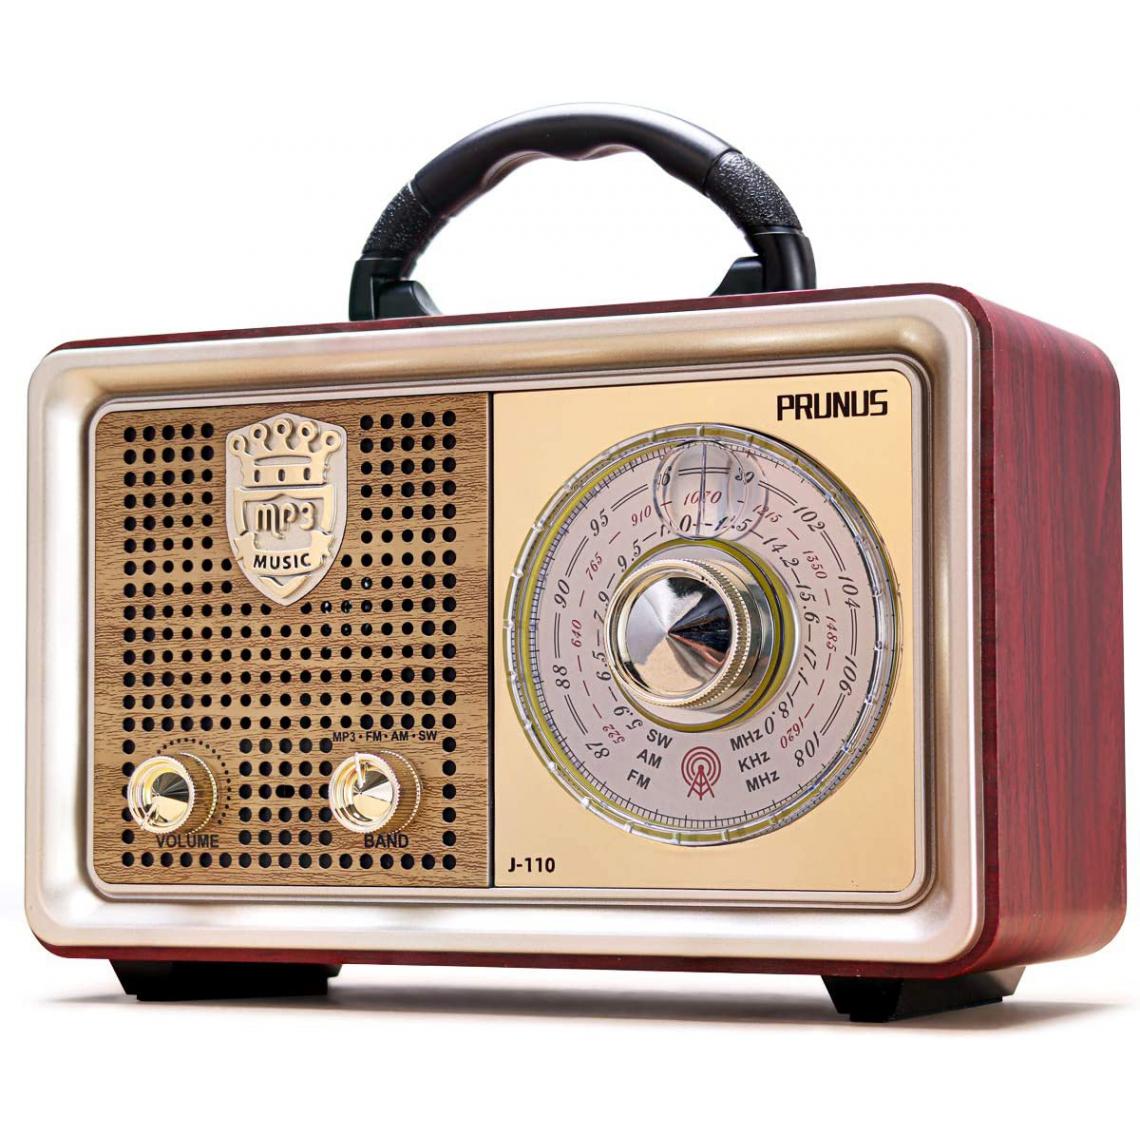 Prunus - radio portable vintage bluetooth BT FM AM (MW) SW 5W argent marron - Radio